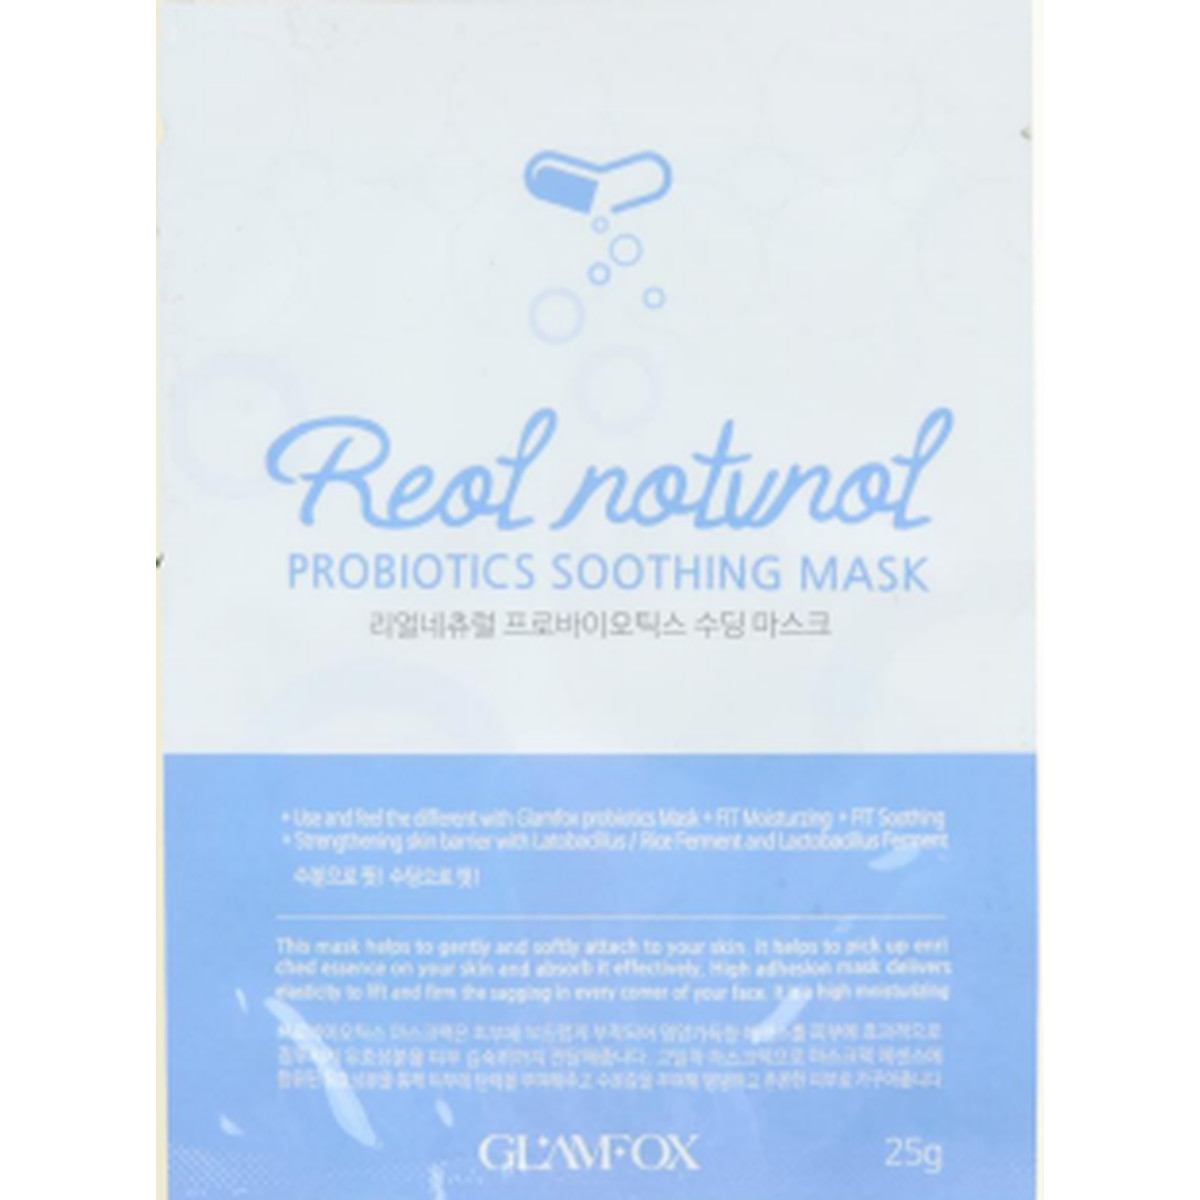 Glamfox Probiotic Soothing Mask Nawilżająco-Kojąca Maska Probiotyczna W Płachcie Do Skóry Suchej, Dojrzałej i Narażonej Na Zanieczyszczenia. 25g